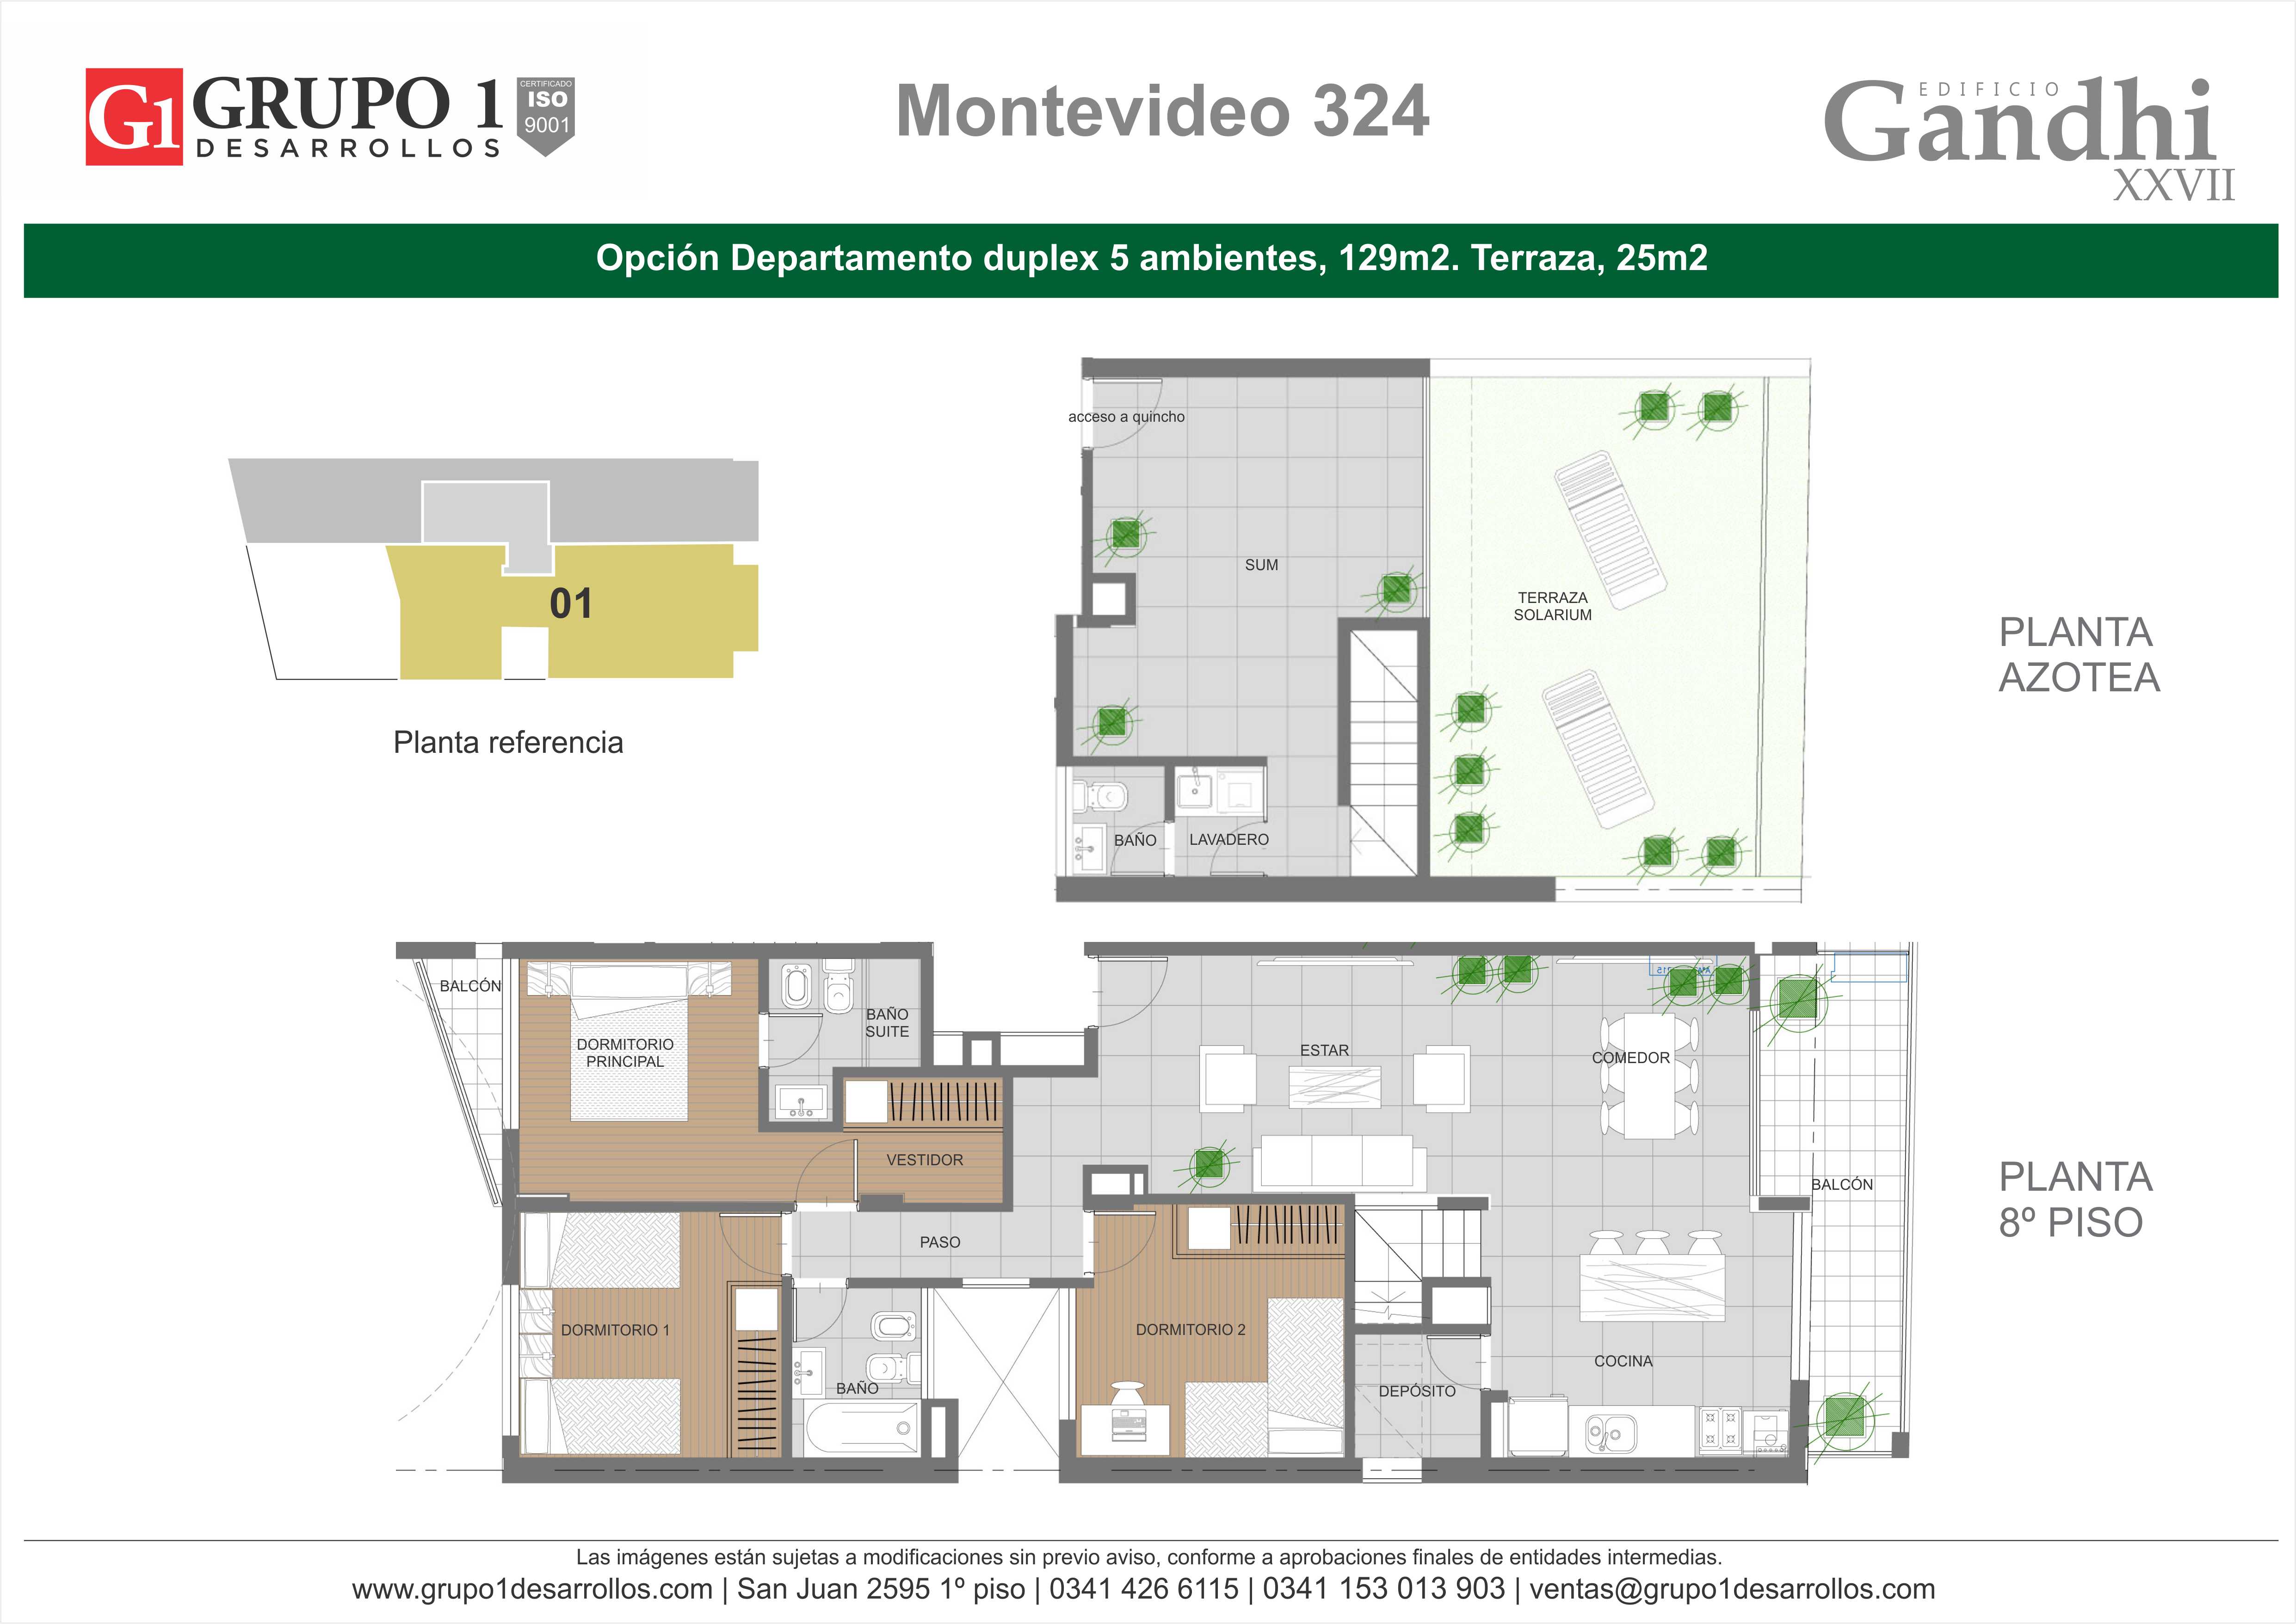 MONTEVIDEO 324 - GANDHI 27